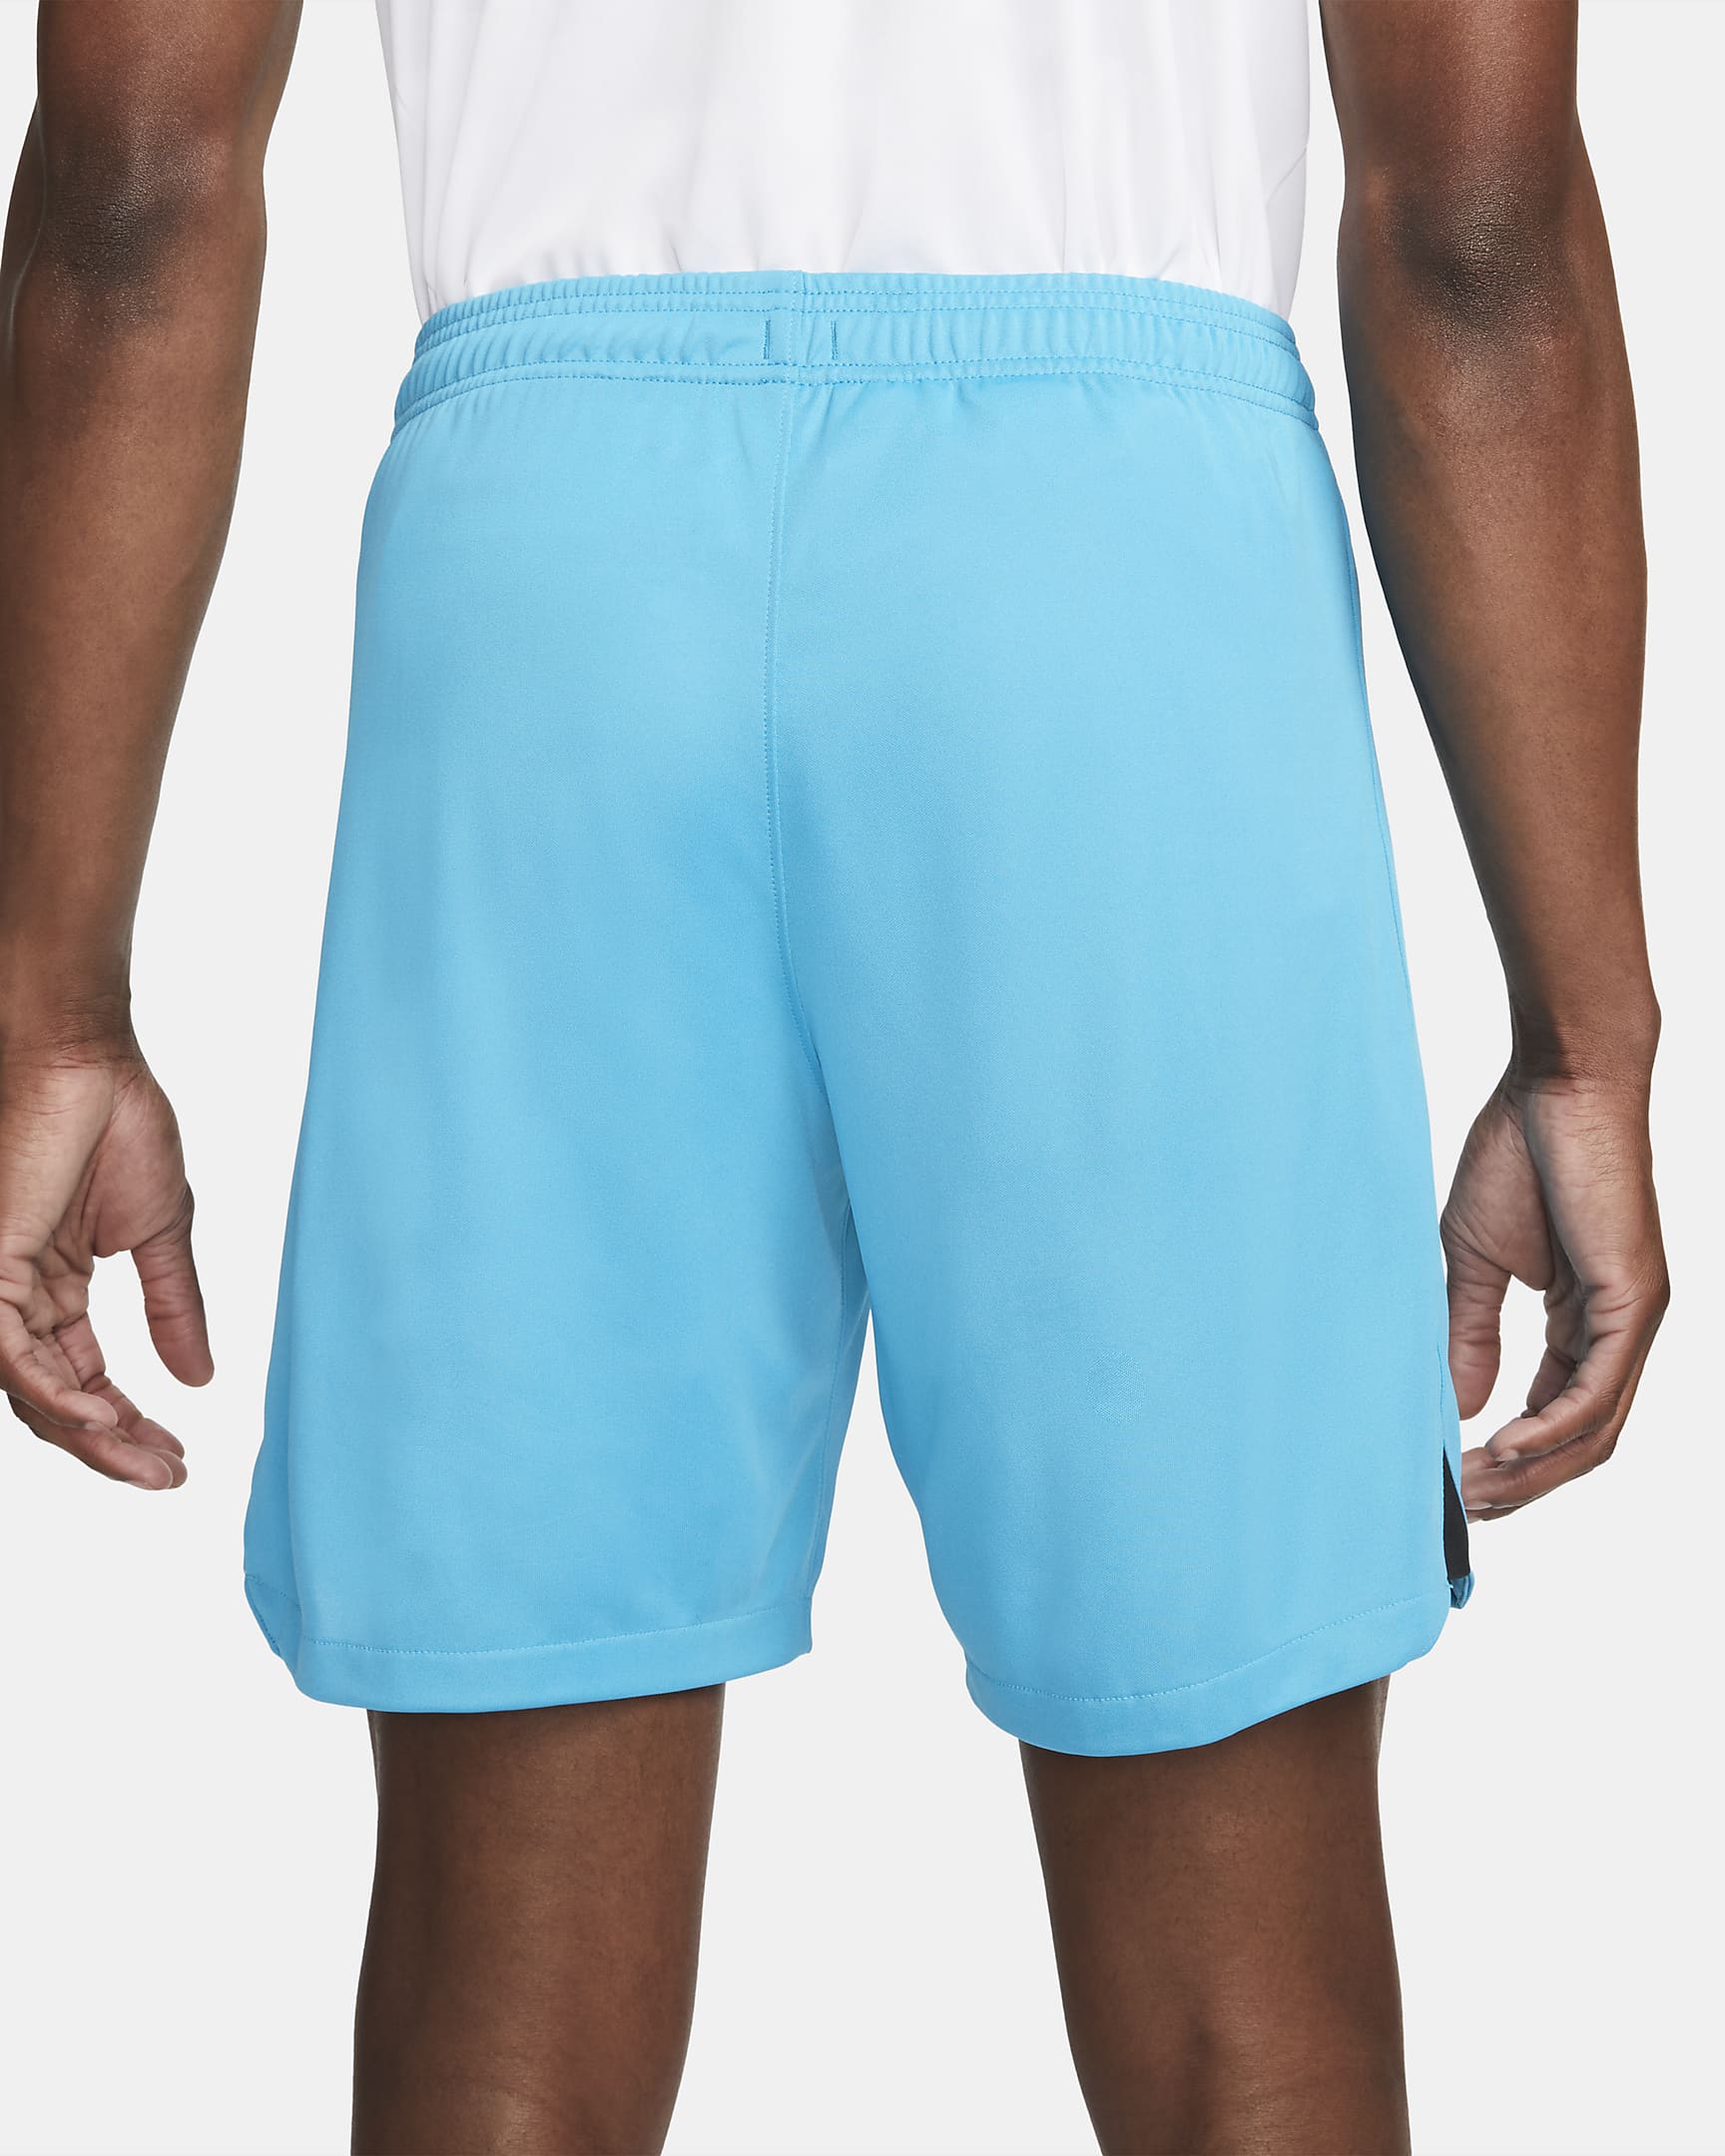 Shorts de fútbol Nike Dri-FIT para hombre del Tottenham Hotspur ...